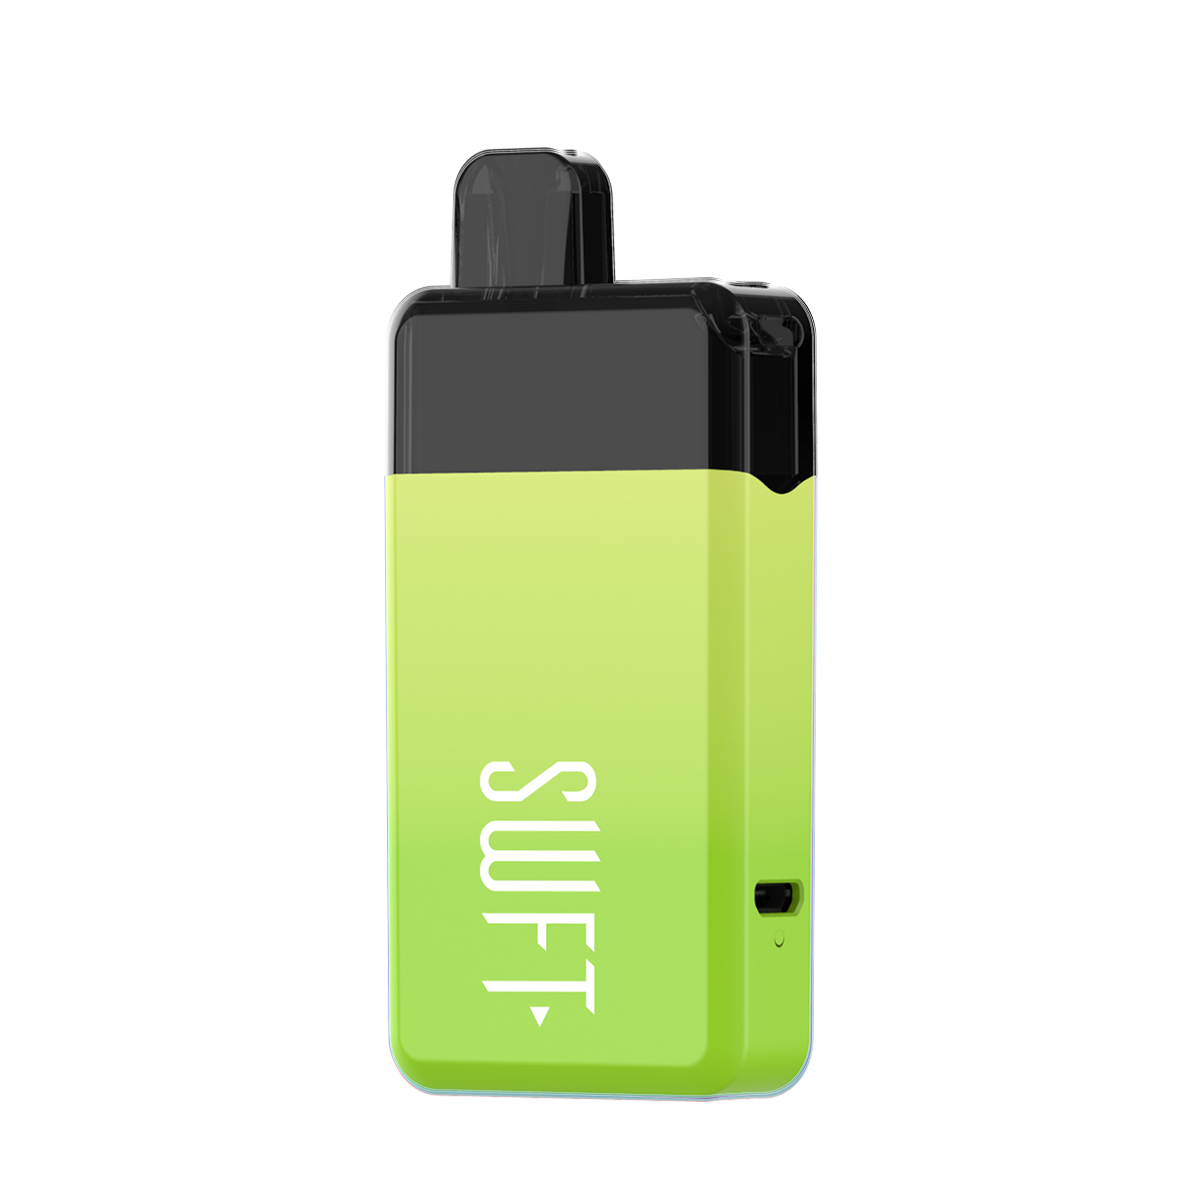 SWFT Mod Disposable Vape Jully Green  